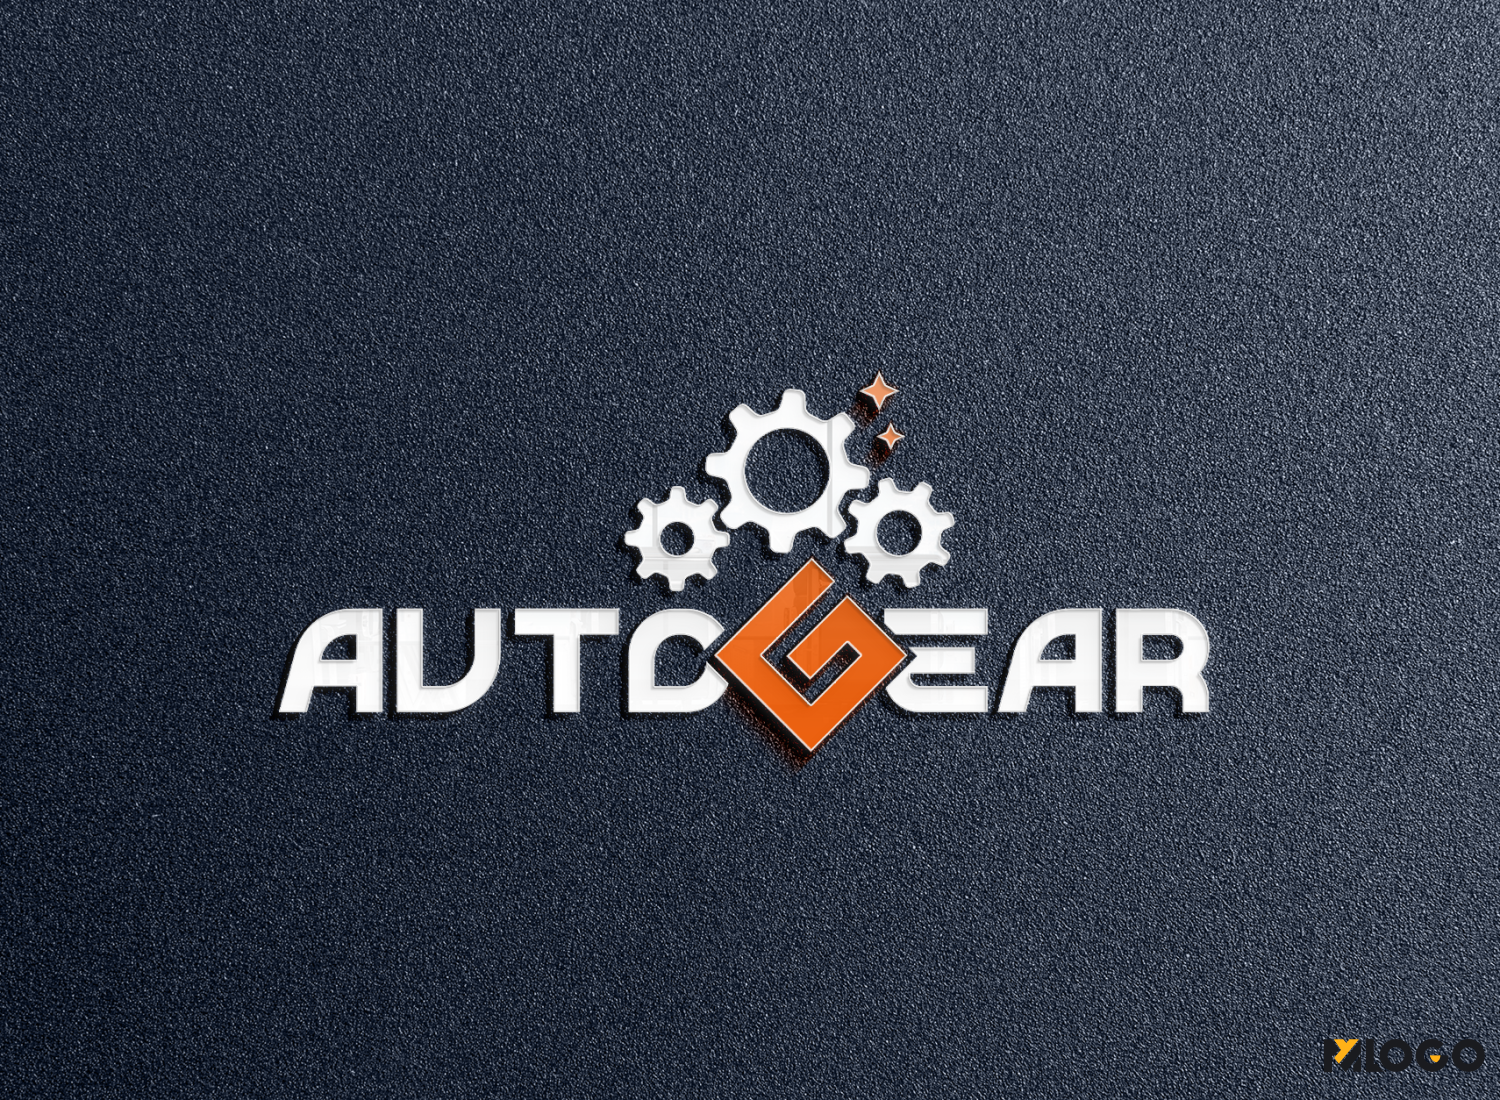 AutoGear • ავტოგეარი